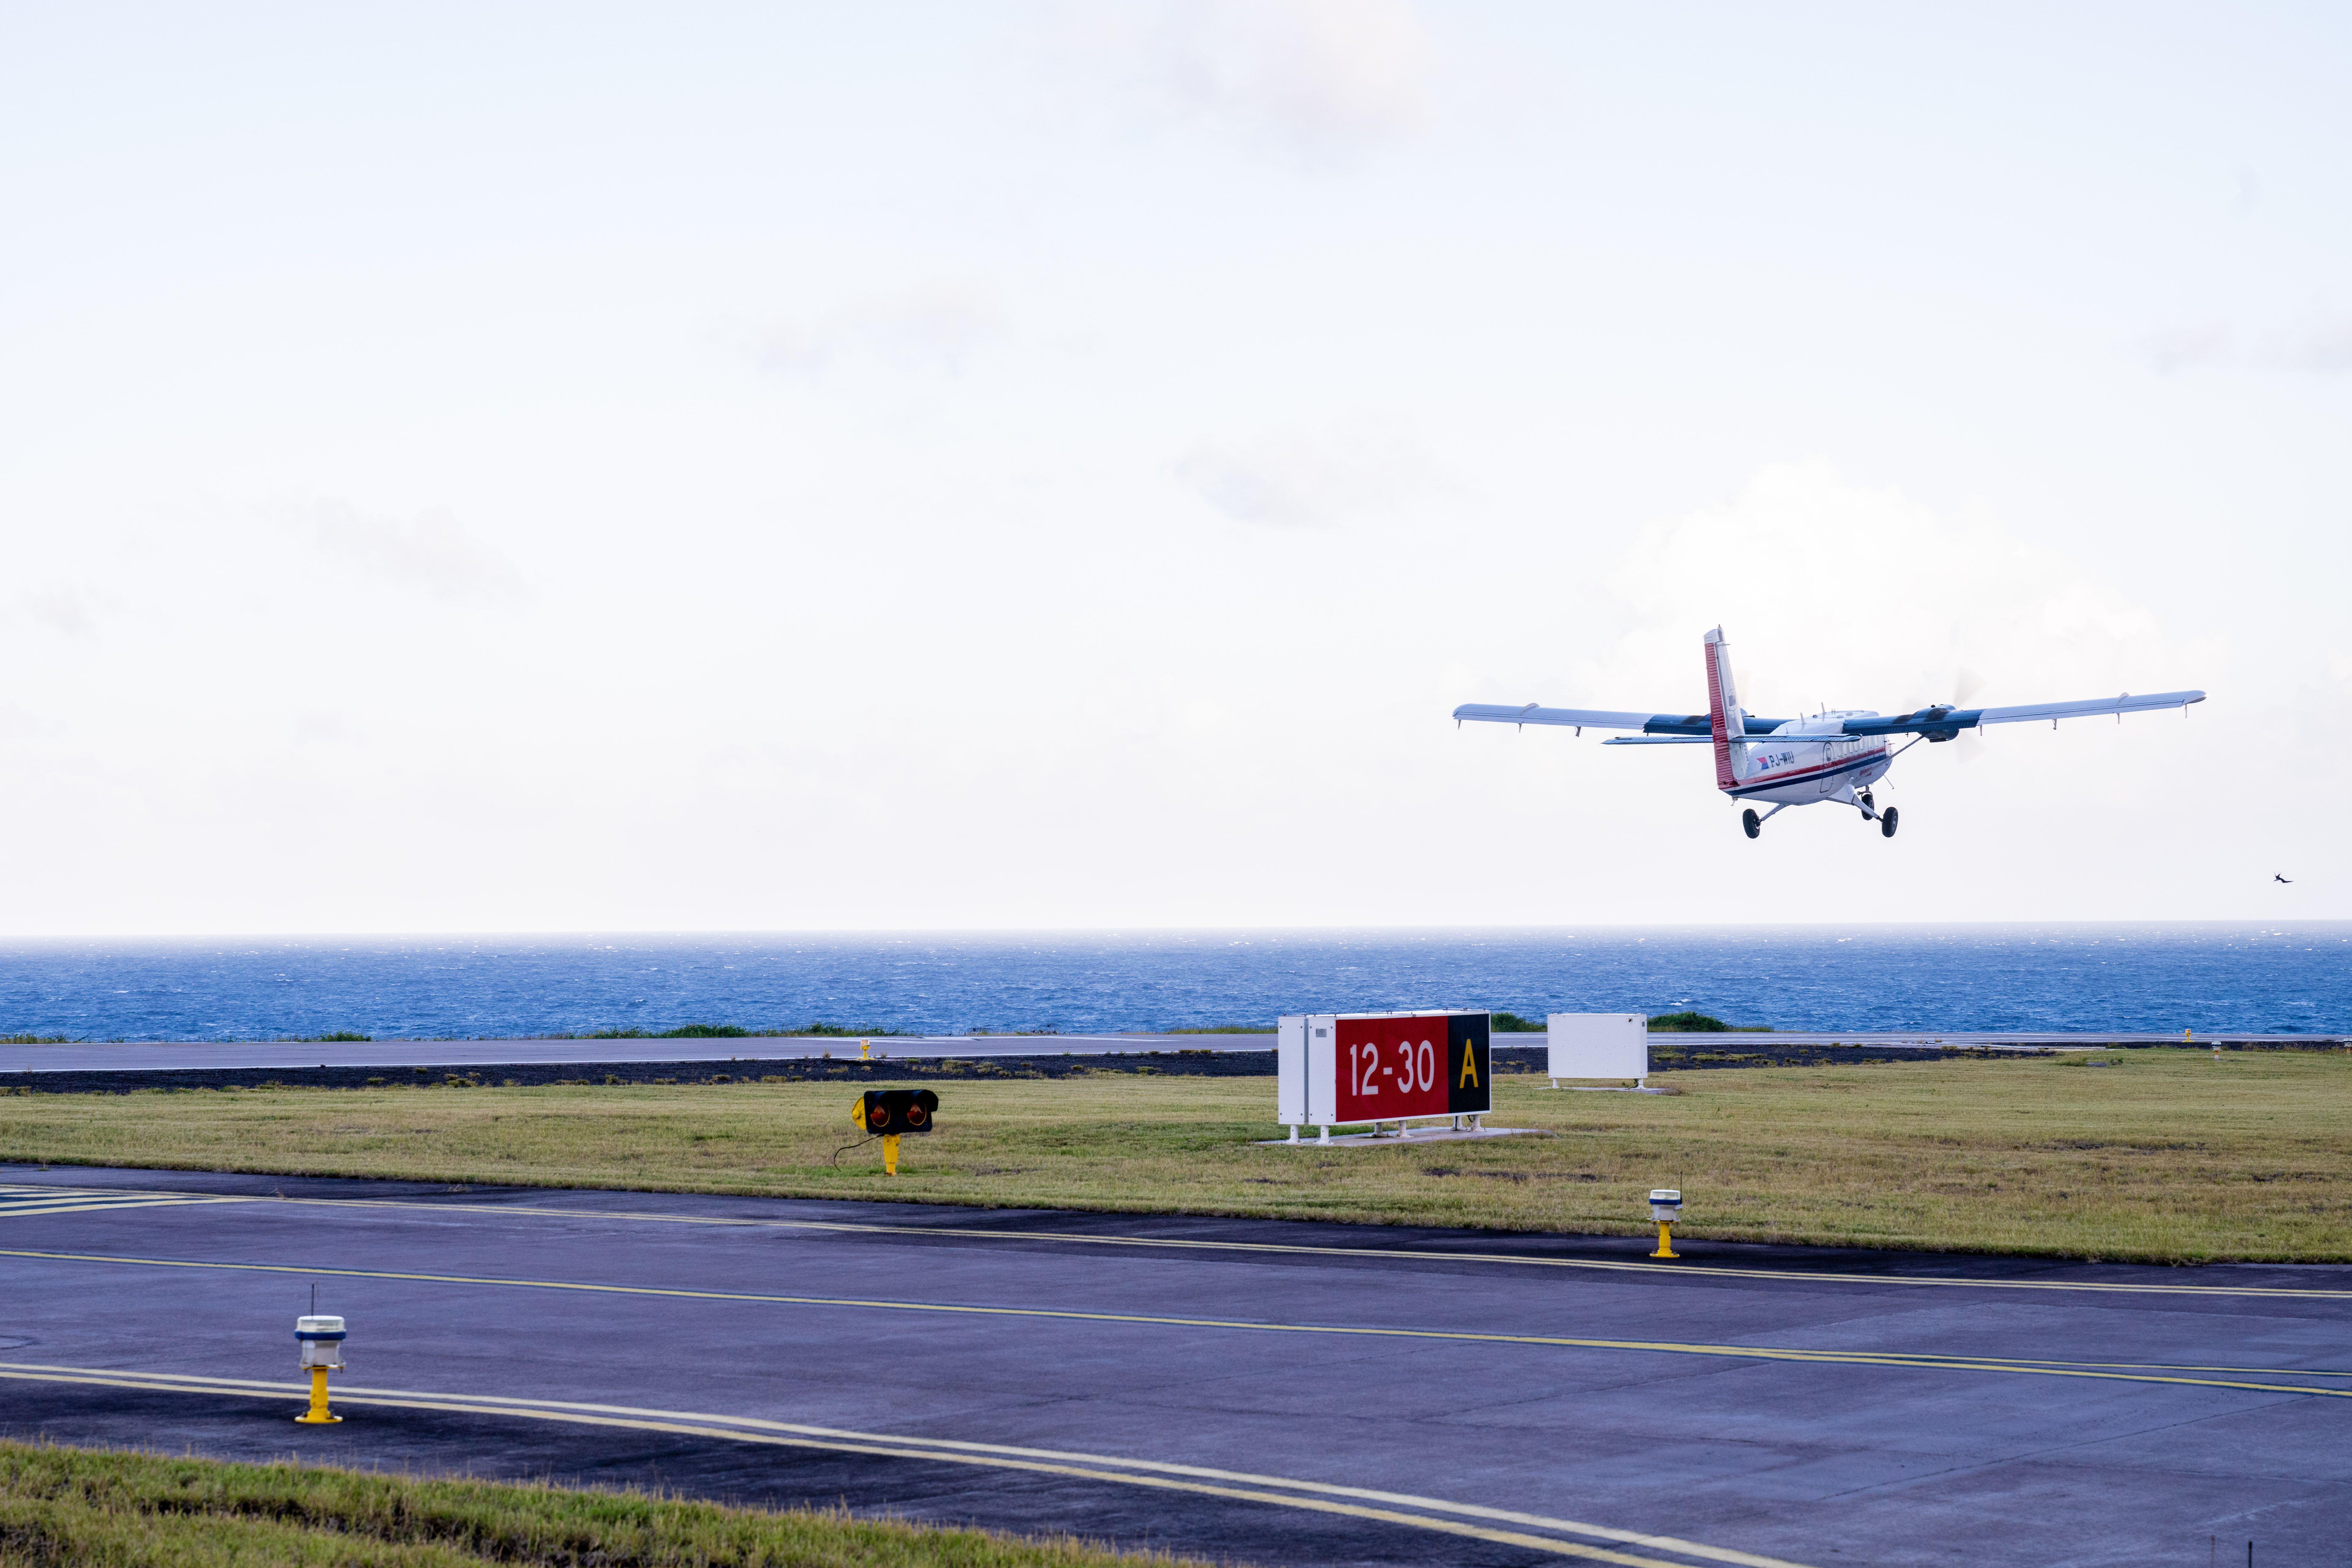 Pequeño avión Winair llegando al aeropuerto, la única aerolínea que opera en la isla